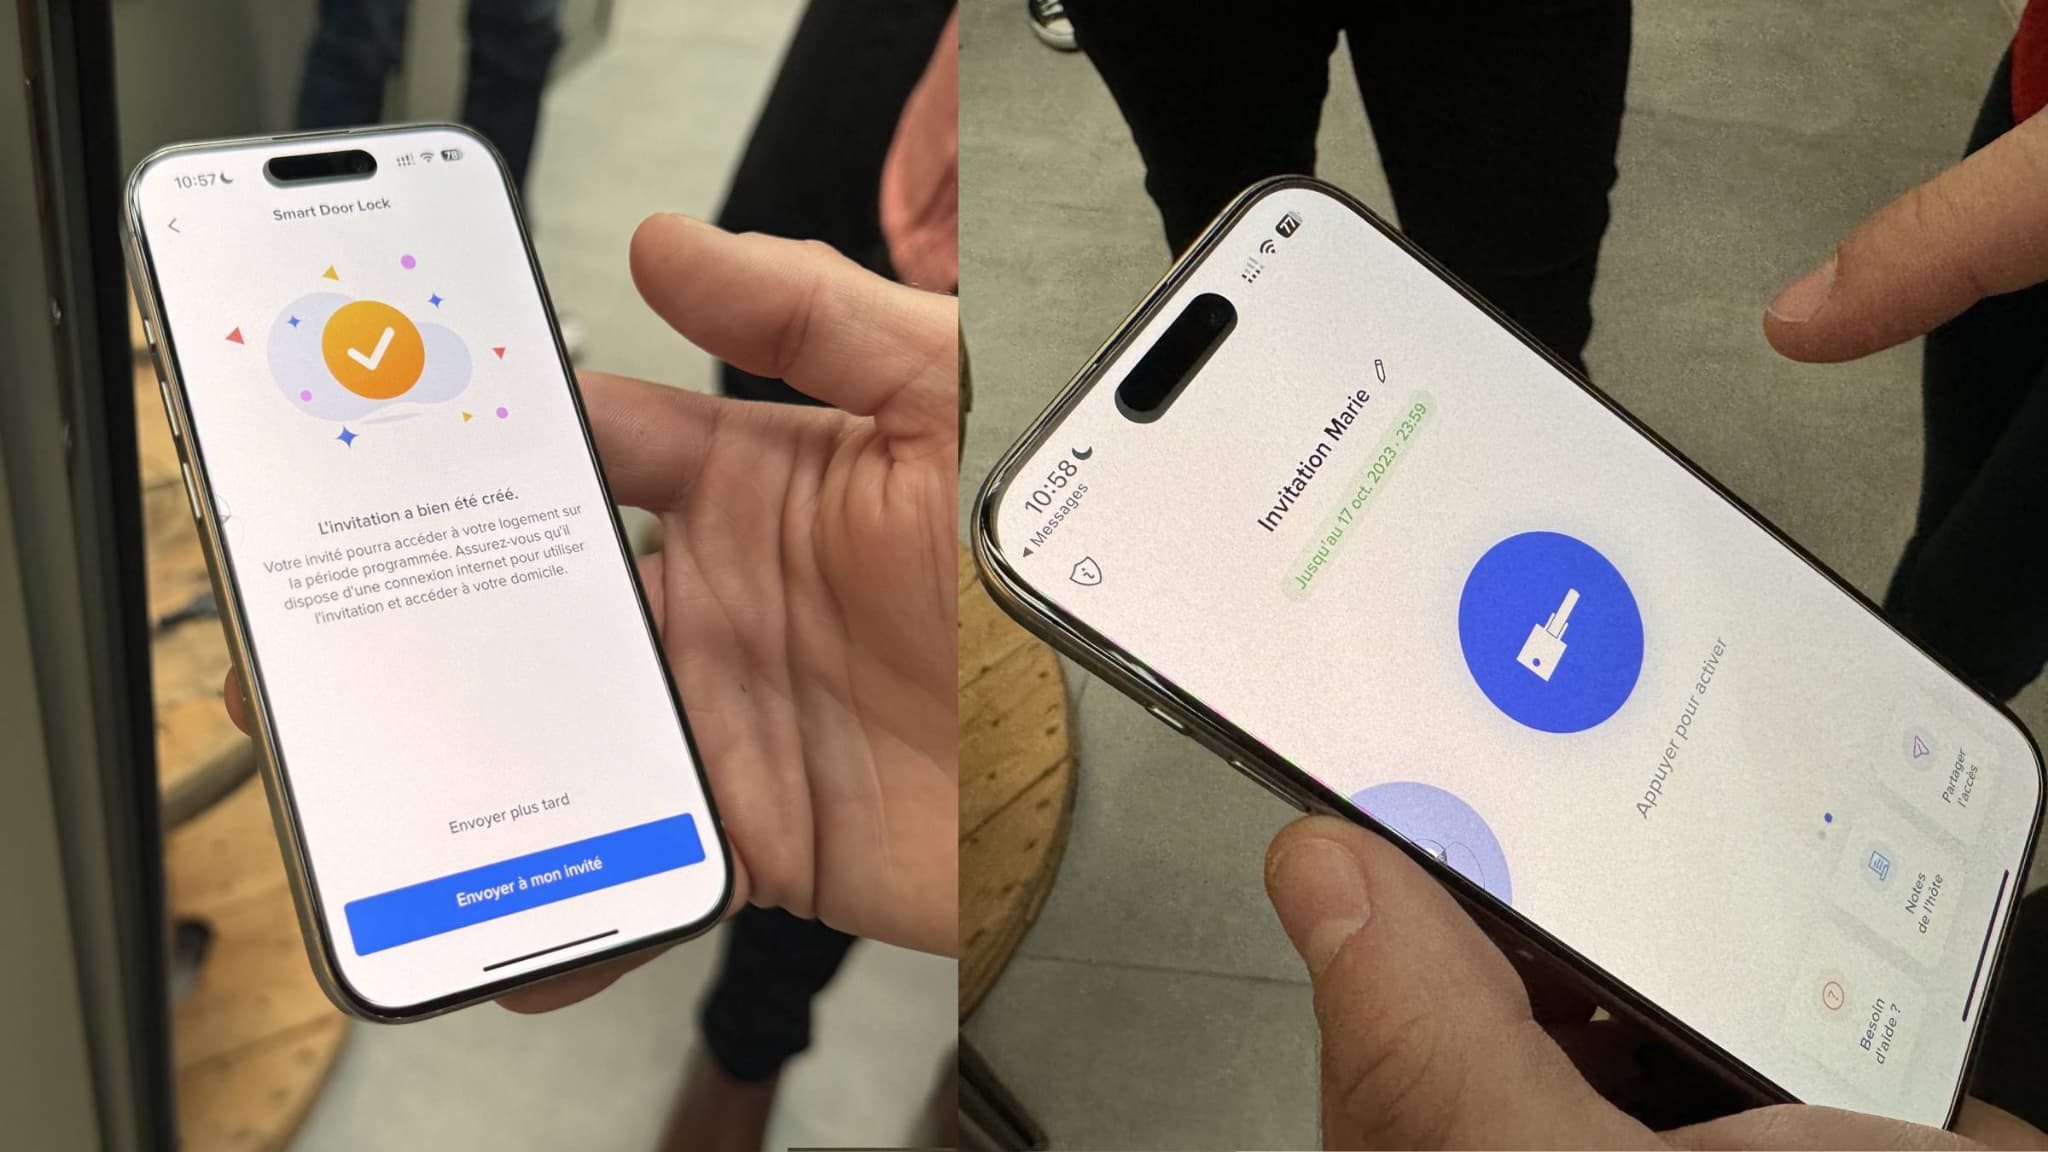 Serrure connectée : et si vous ouvriez votre porte à distance depuis votre  smartphone ? 